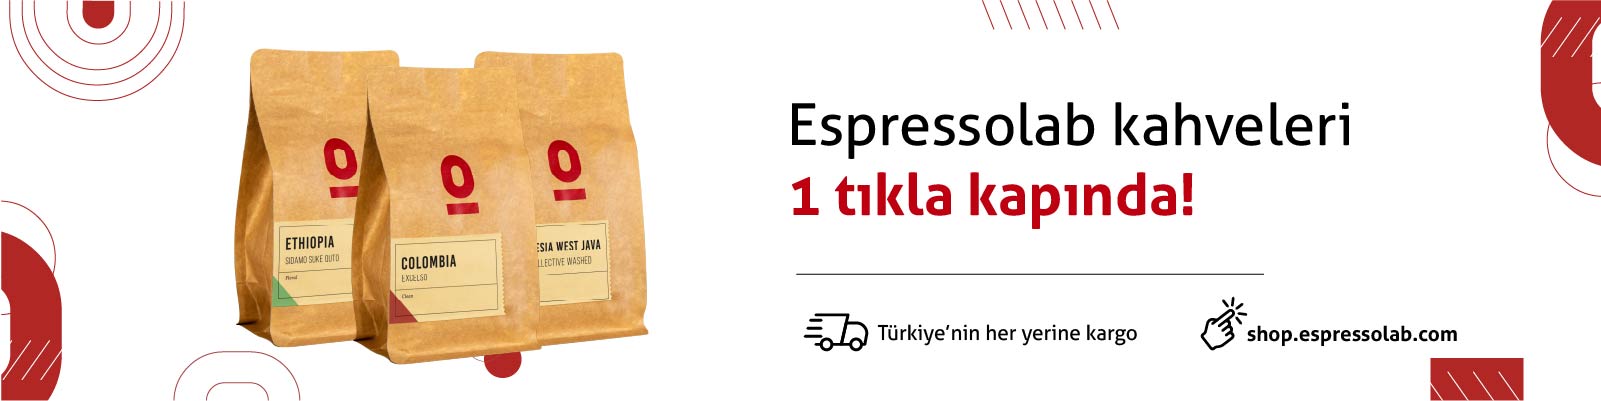 Espressolab kahveleri 1 tıkla kapında